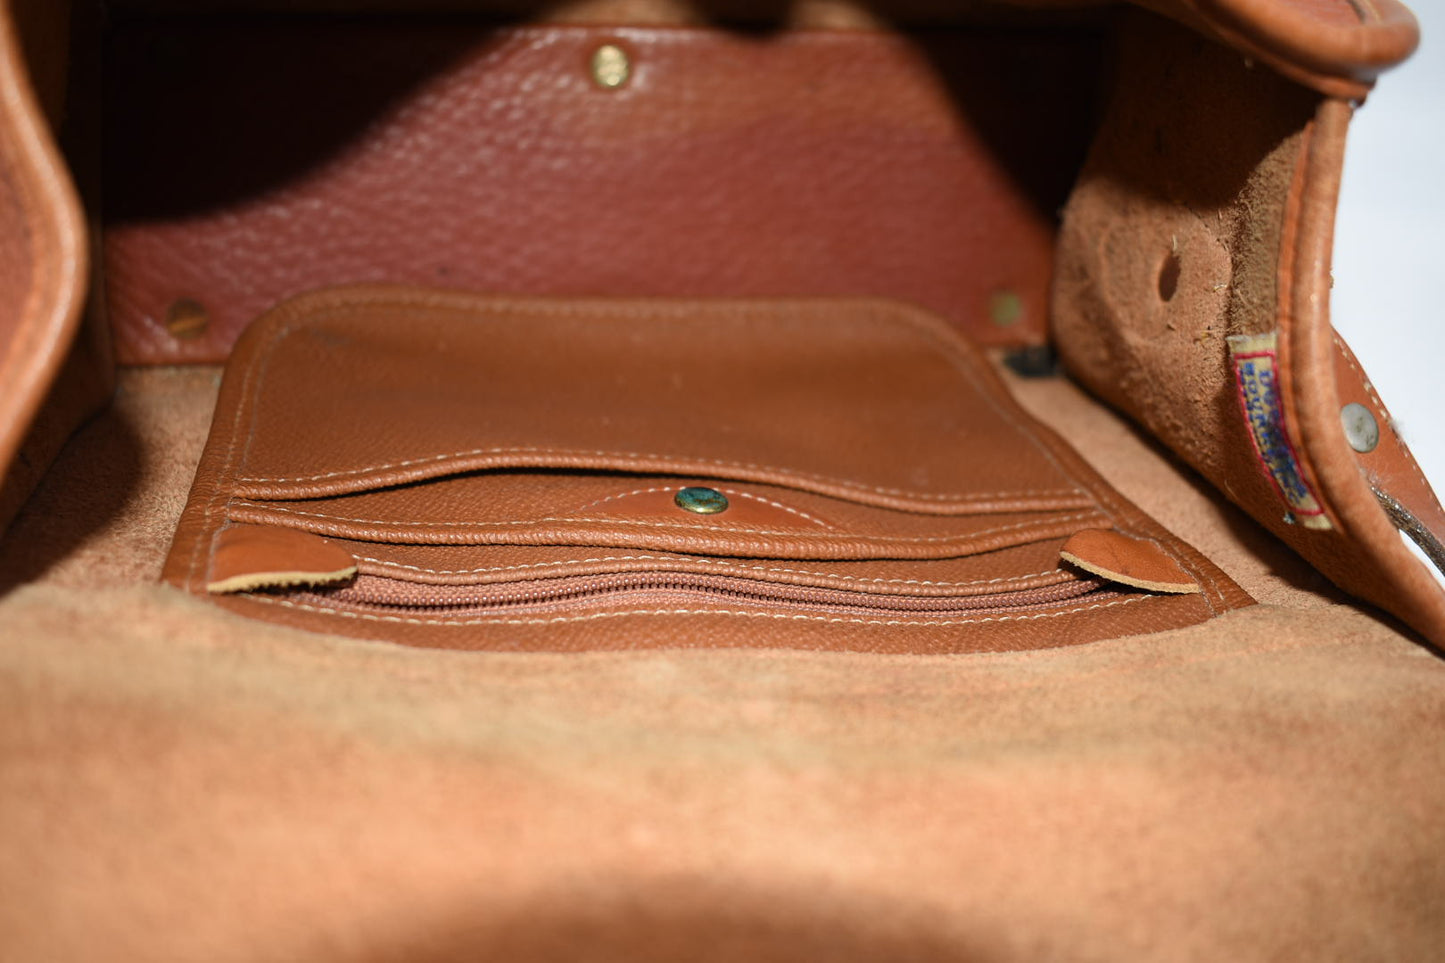 Vintage Dooney & Bourke Leather Shoulder Bag